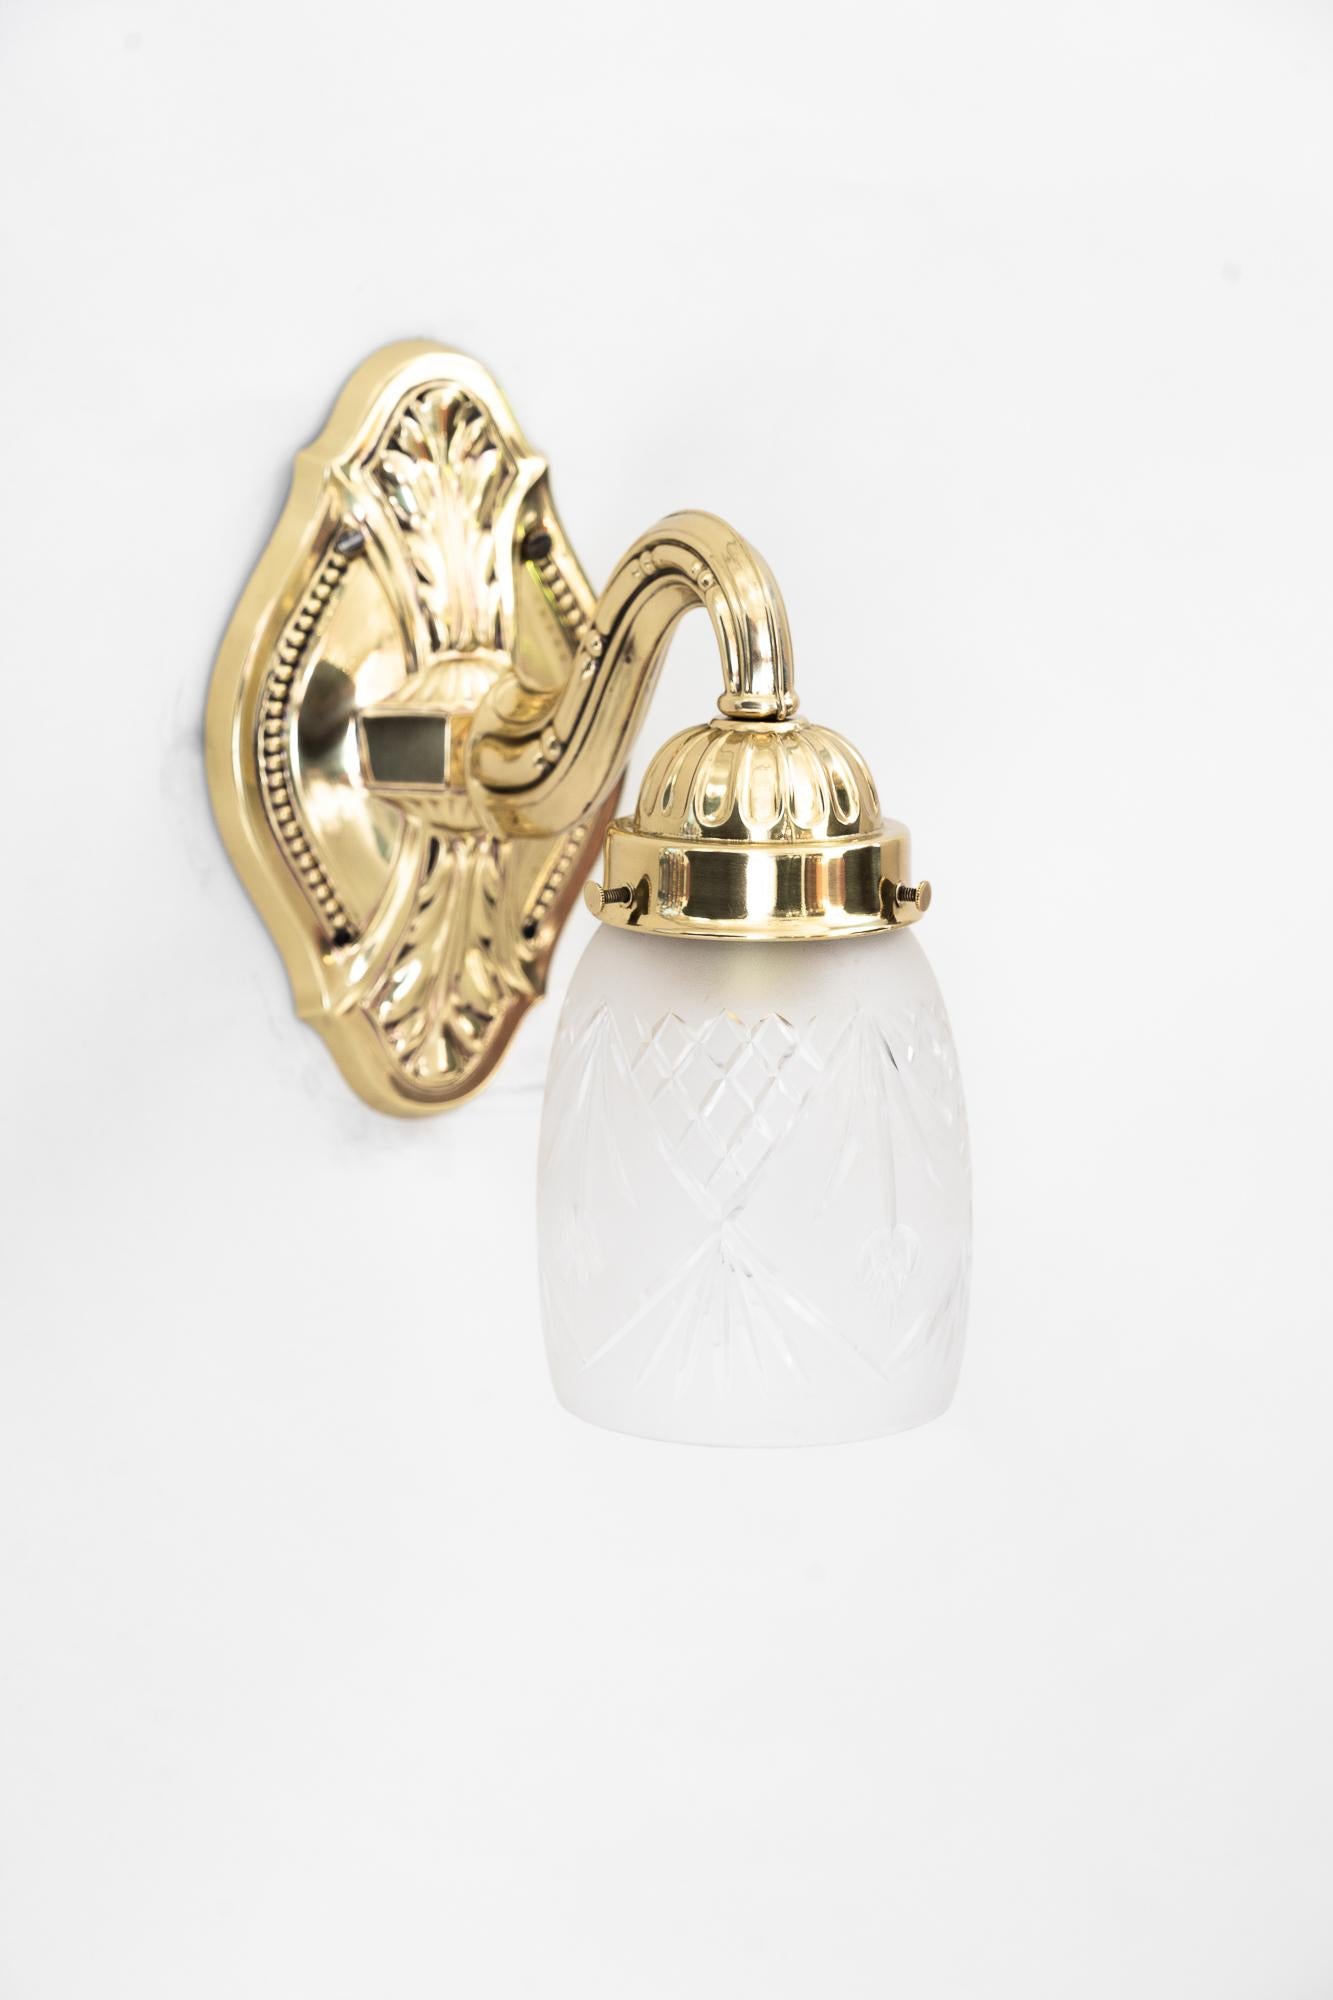 Historistische Wandlampe um 1890 mit originalem Glasschirm
Poliert und emailliert
Original Glasschirm.